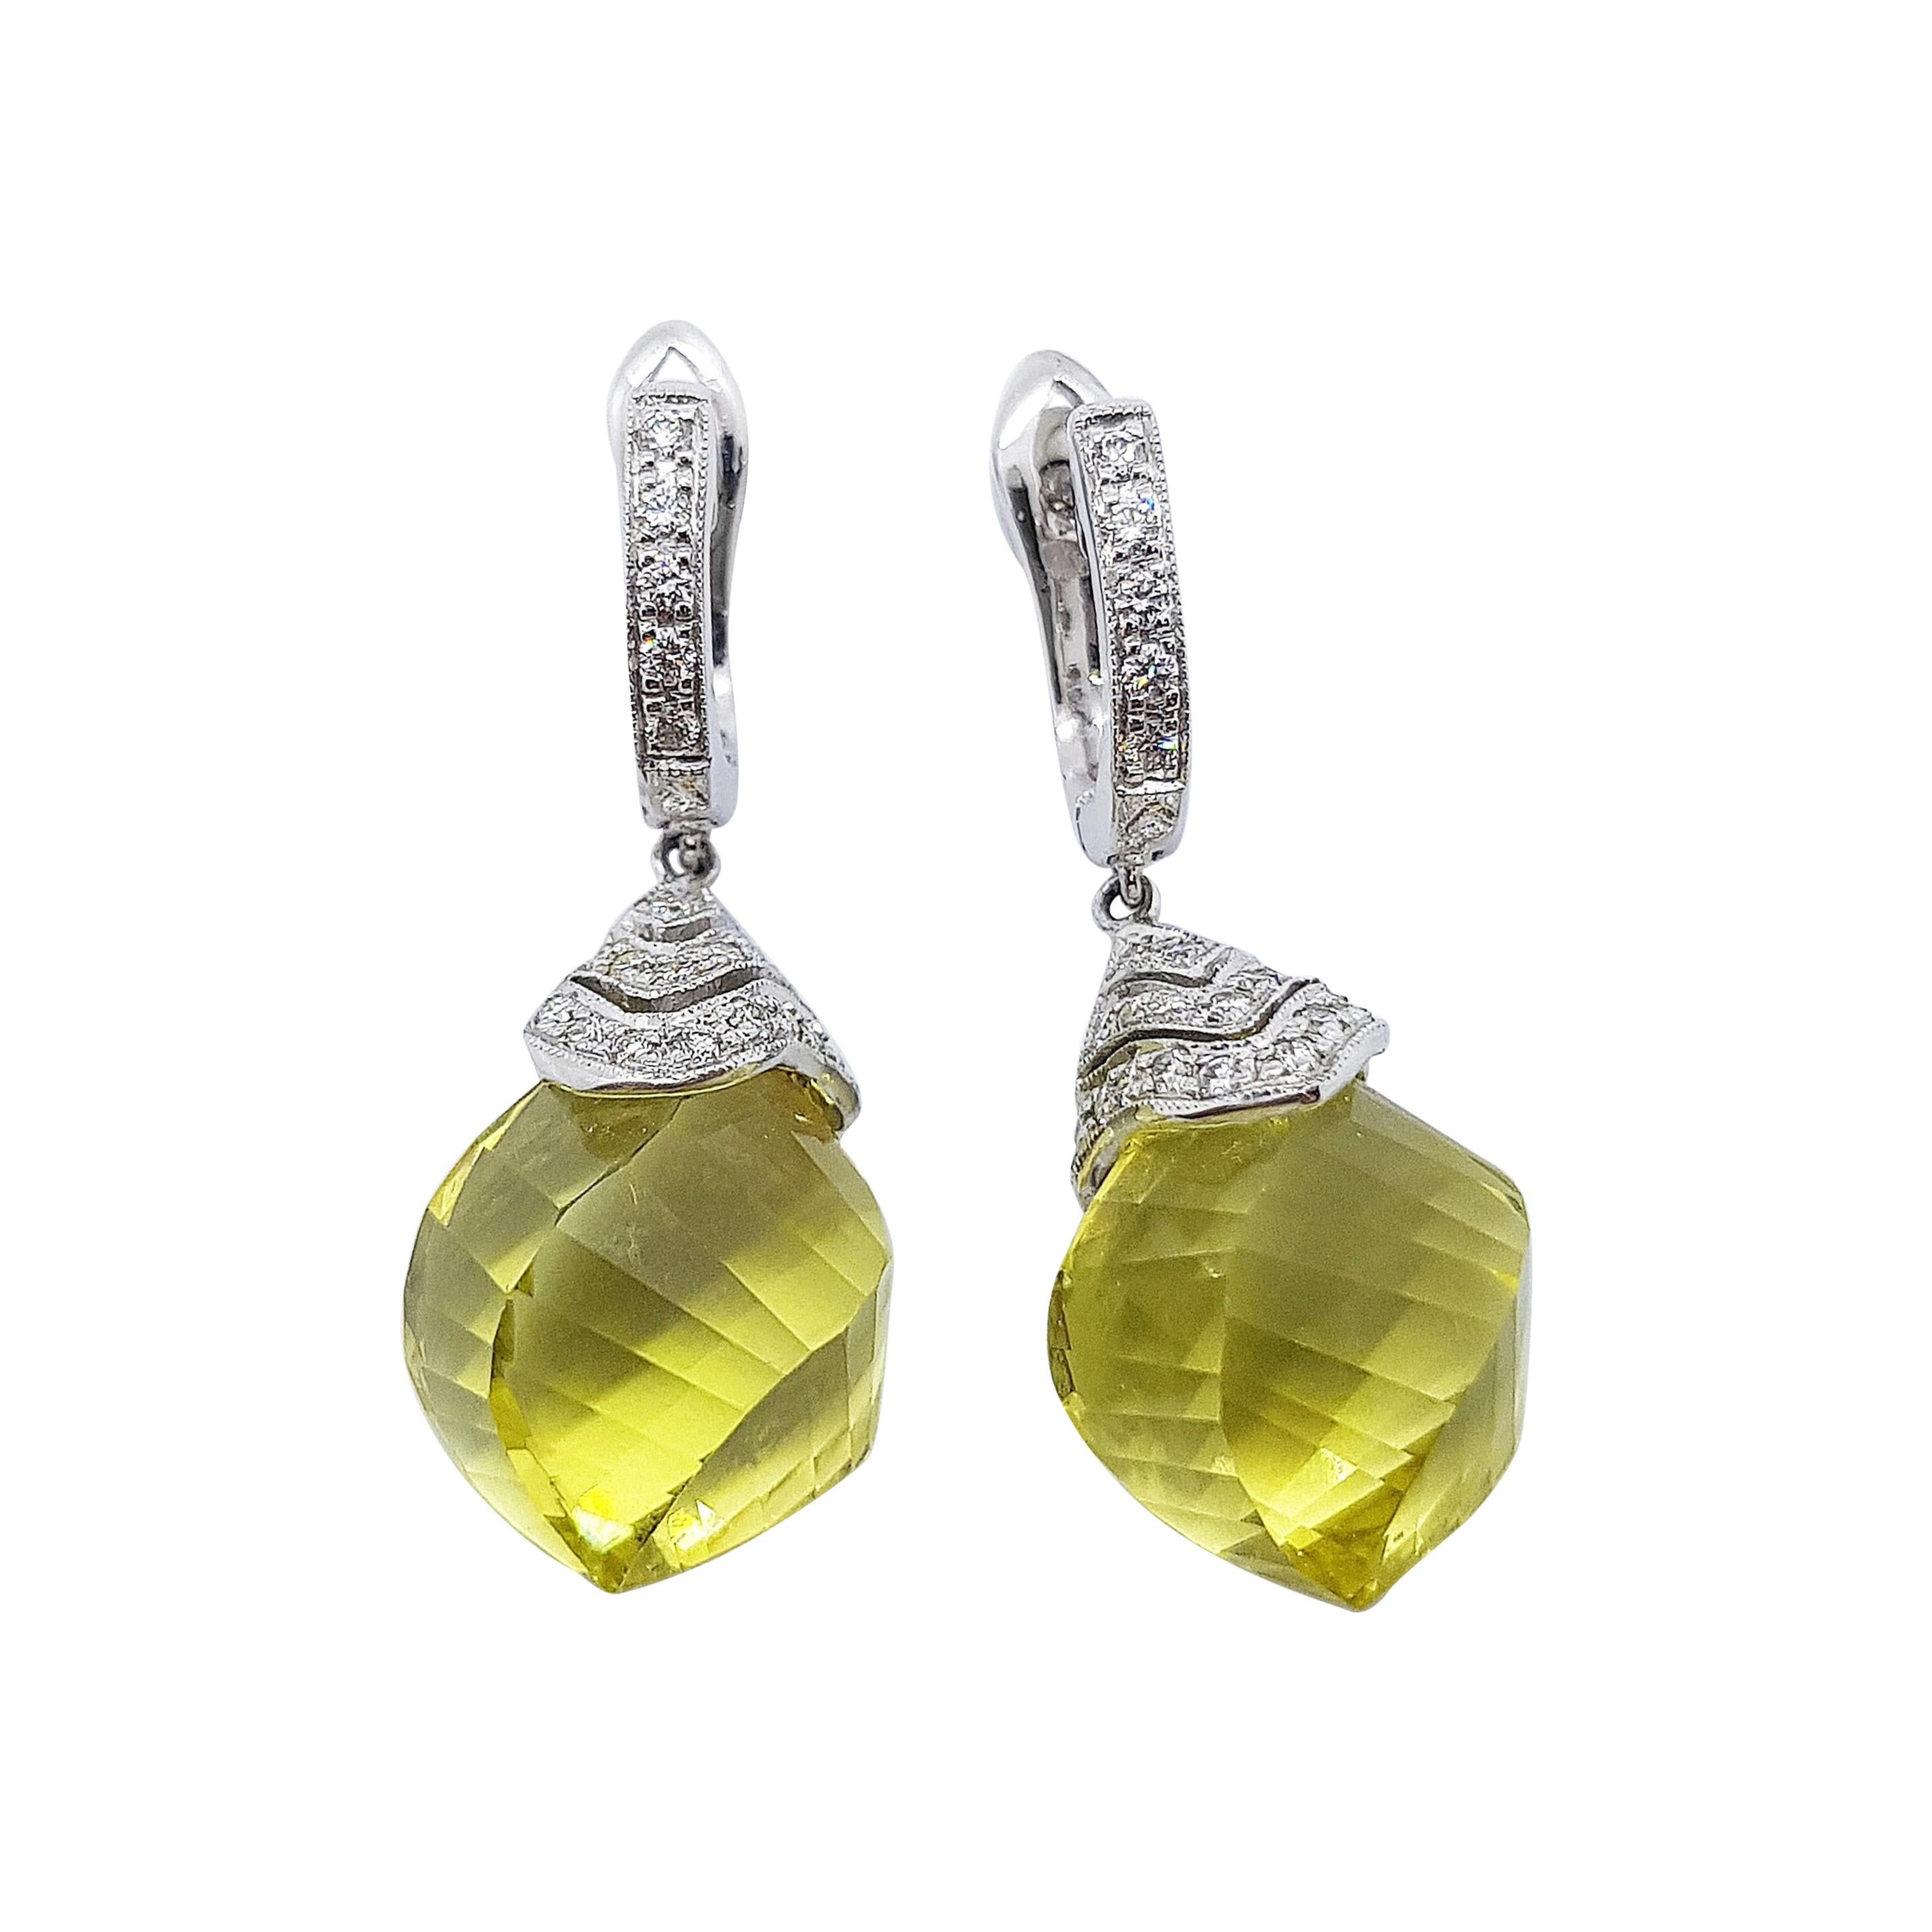 Boucles d'oreilles en or blanc 18 carats serties de quartz citron et de diamants